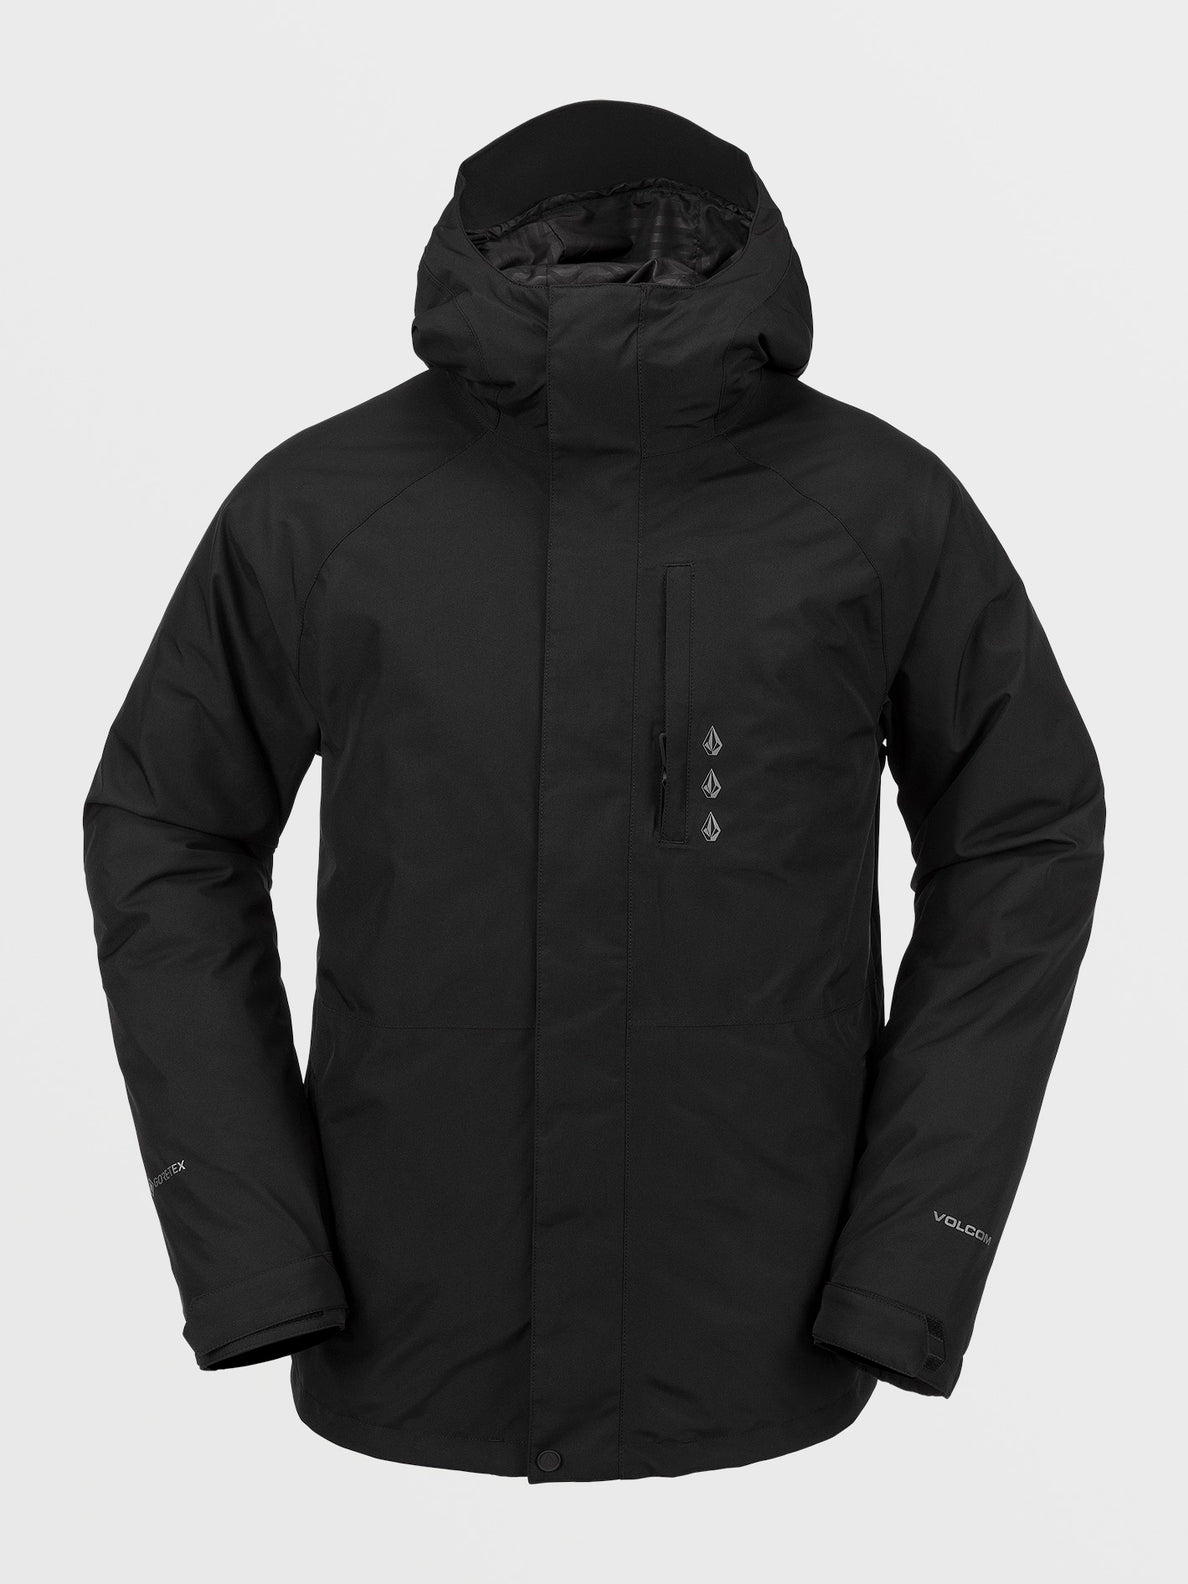 Volcom Dua Ins Gore Jacket XL / Black